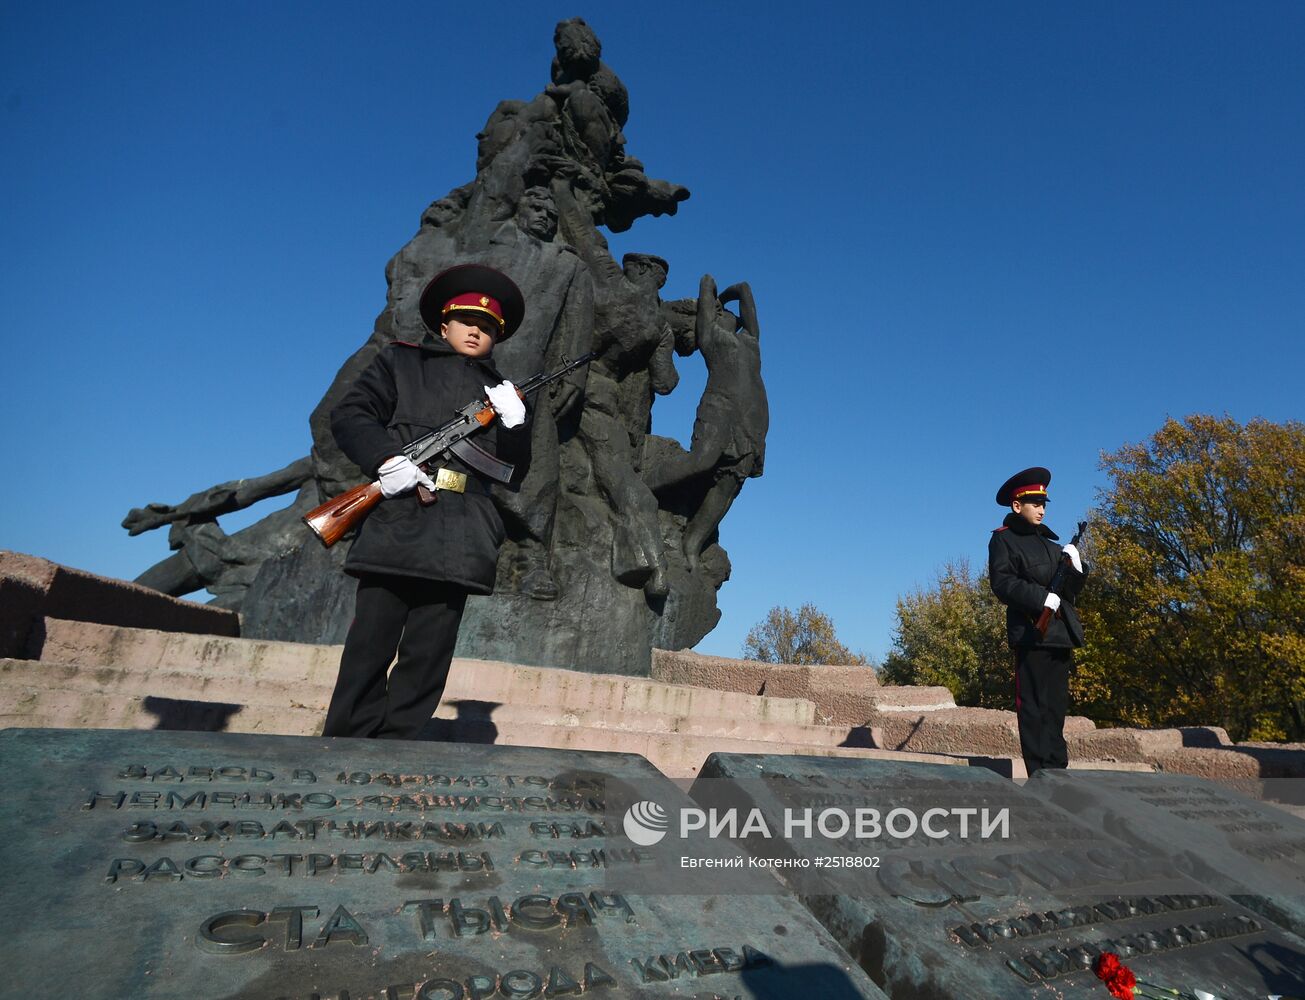 Вахта памяти "Спасибо за жизнь", посвященная 70-летию освобождения Украины